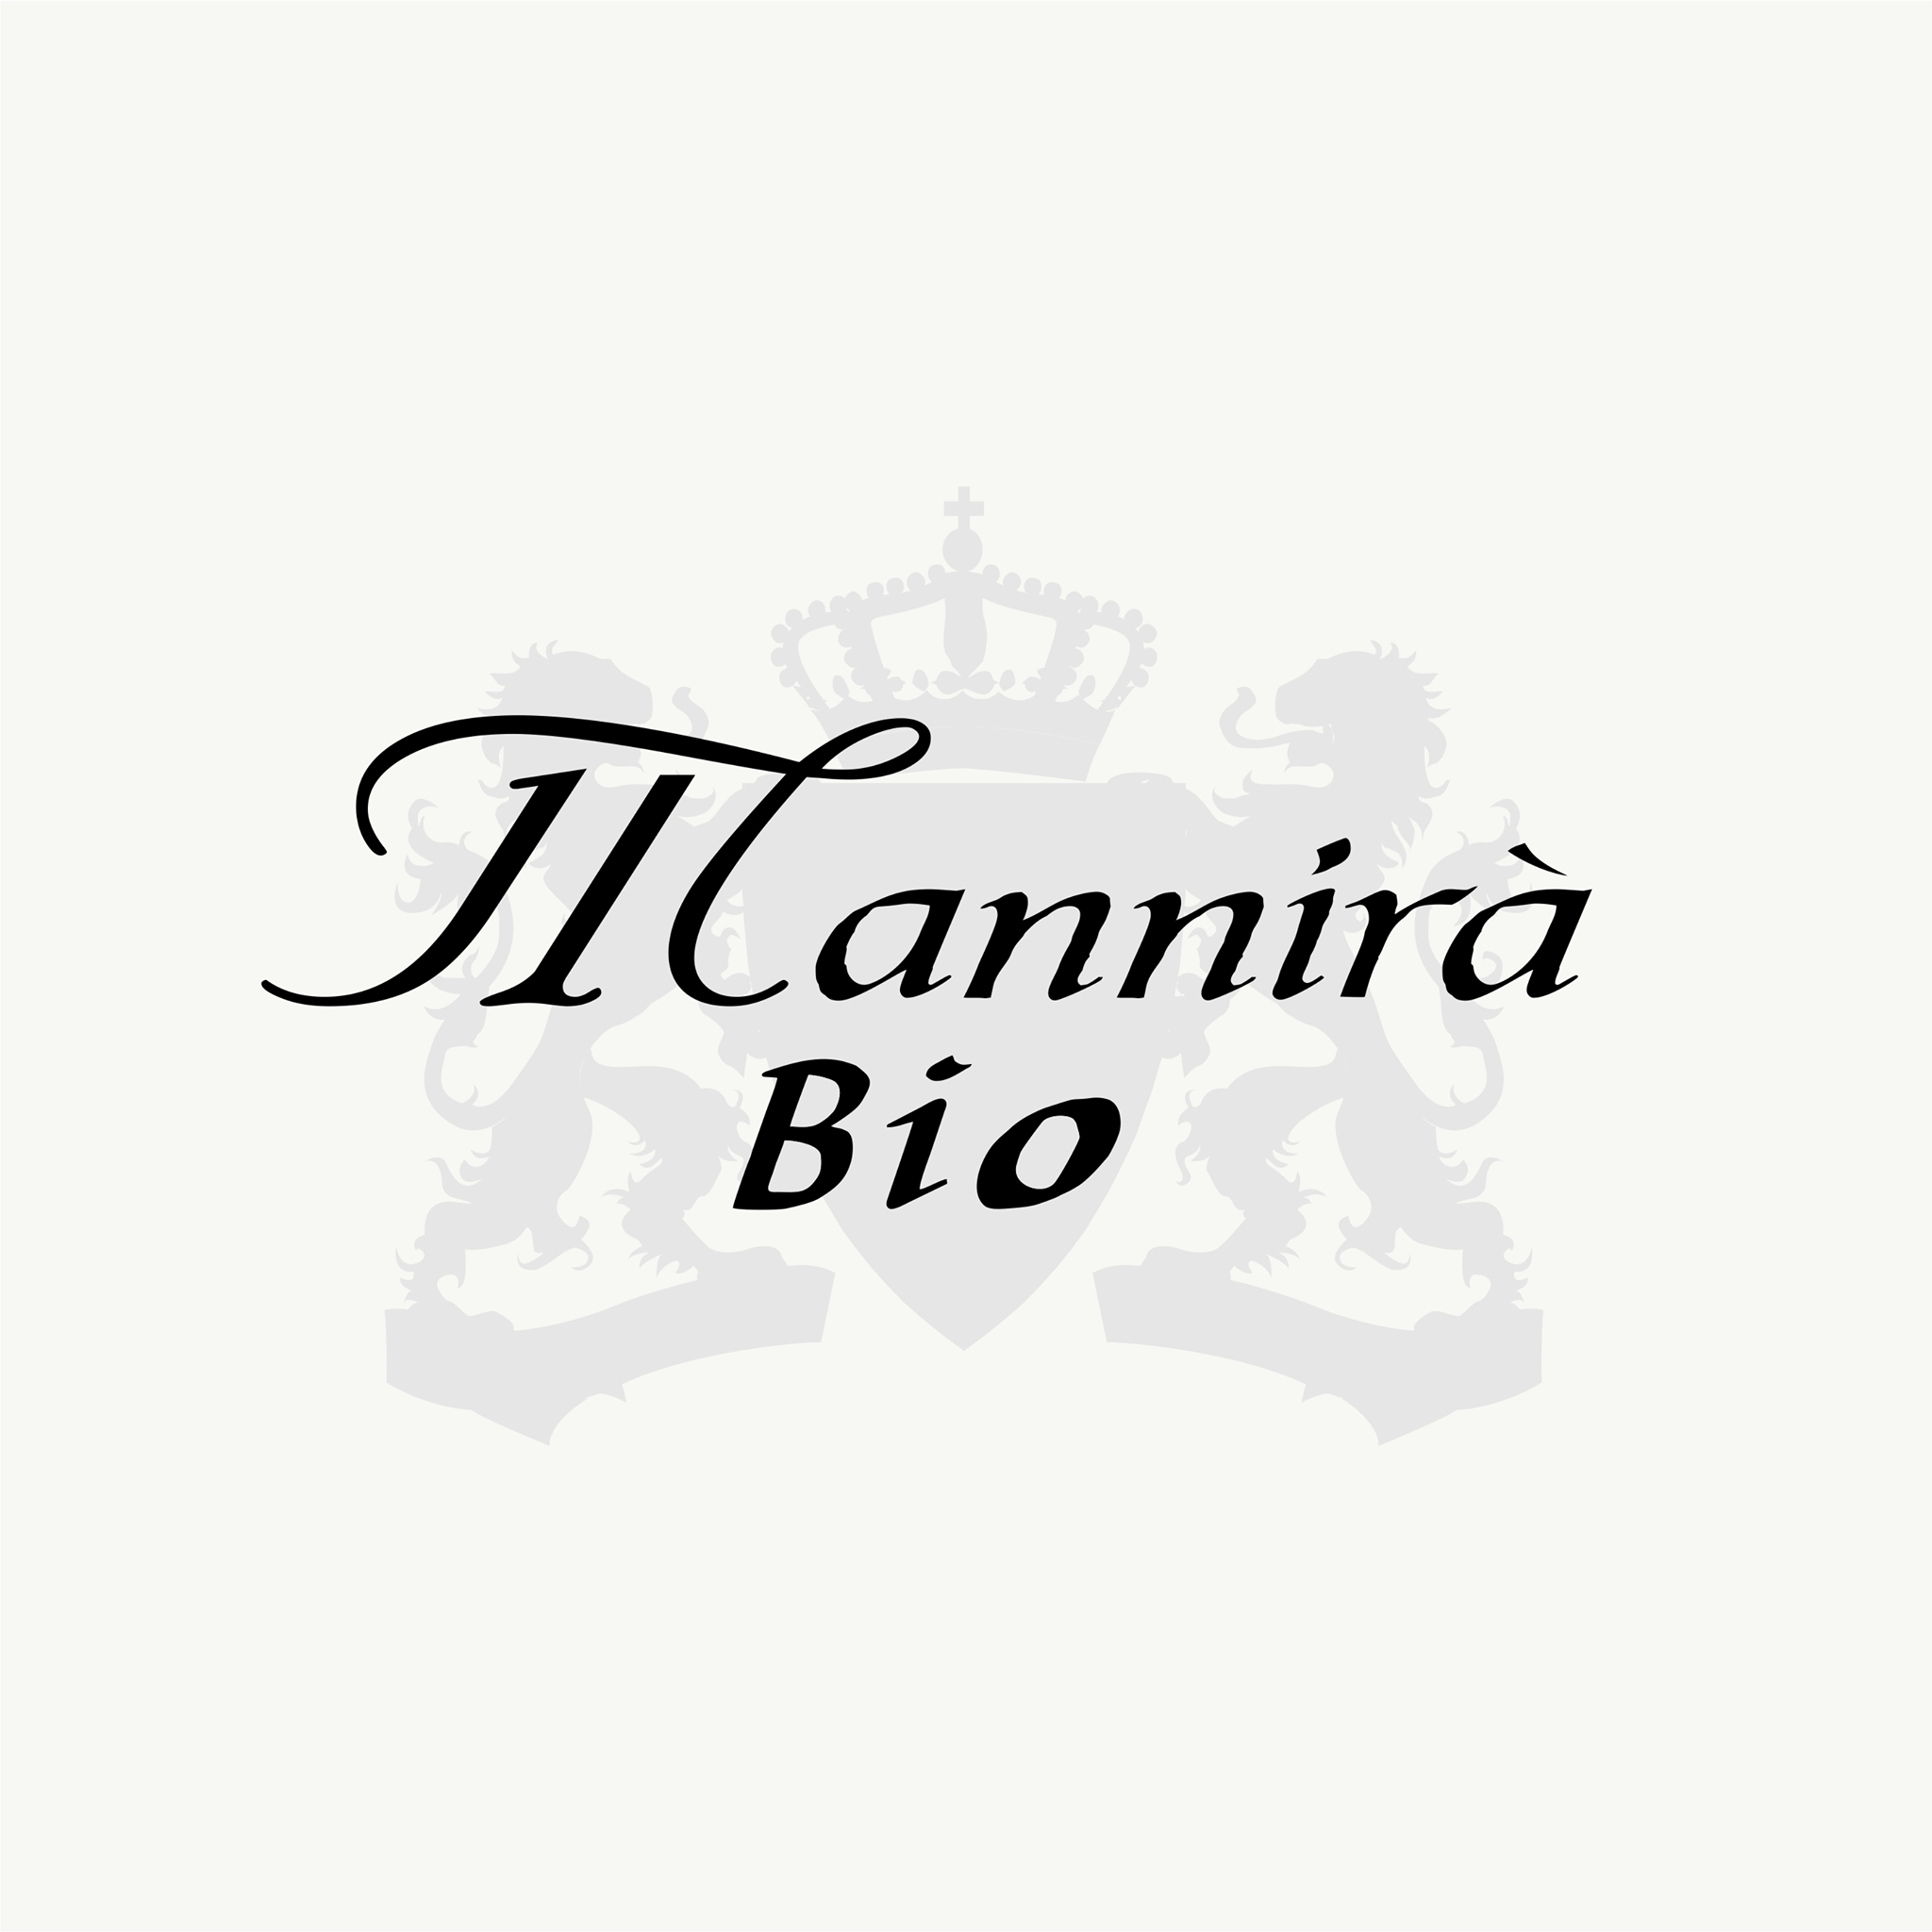 Mannirà Bio  - Tenuta Mannirà  su Dilloconilvino.it